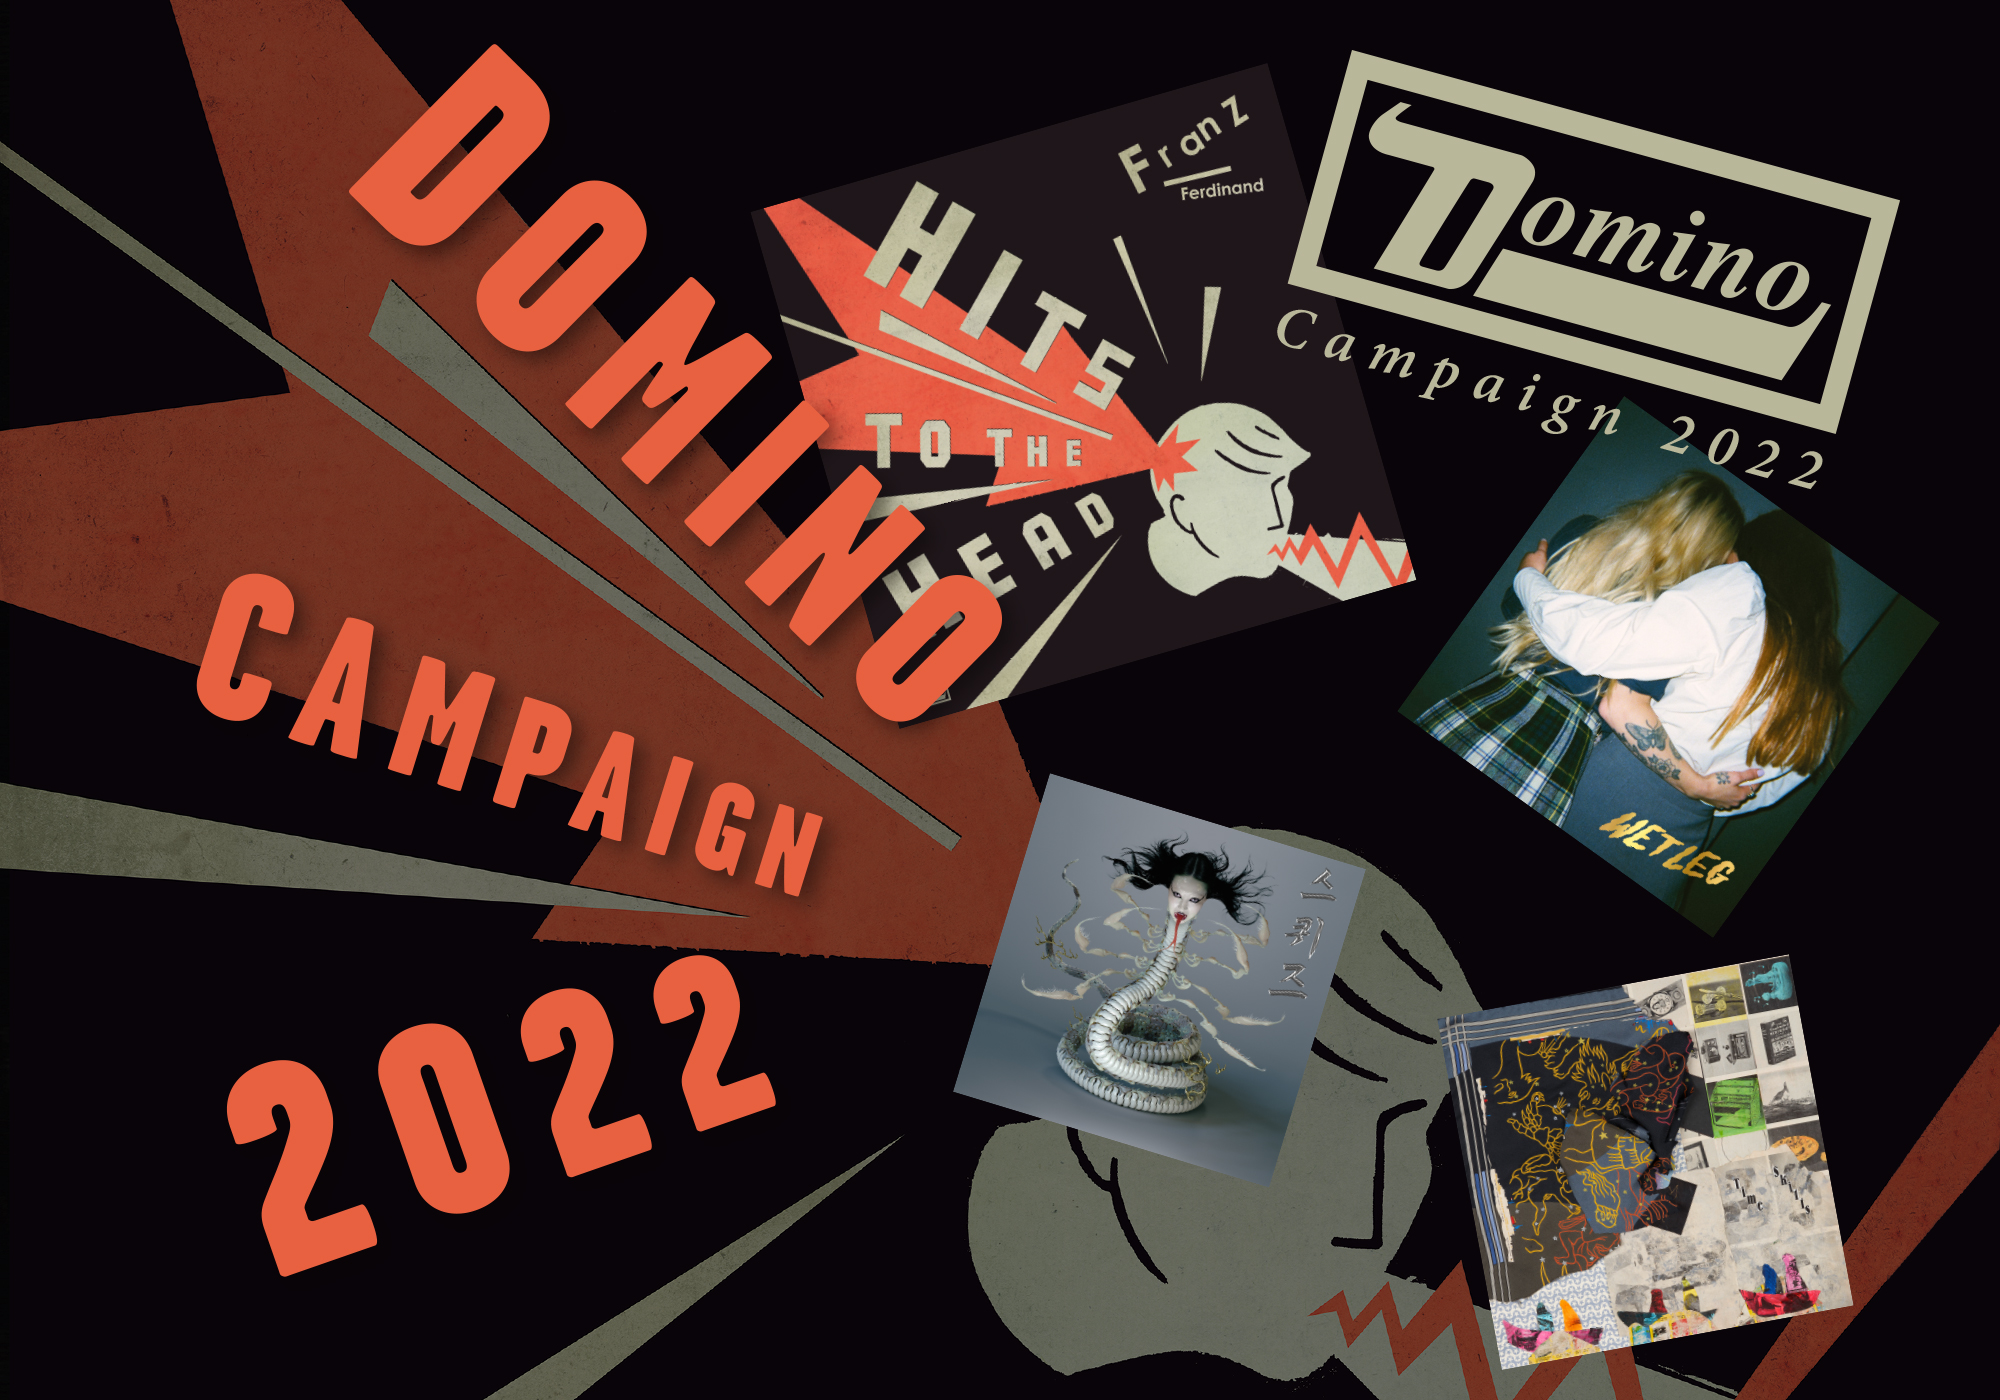 Domino Campaign 2022